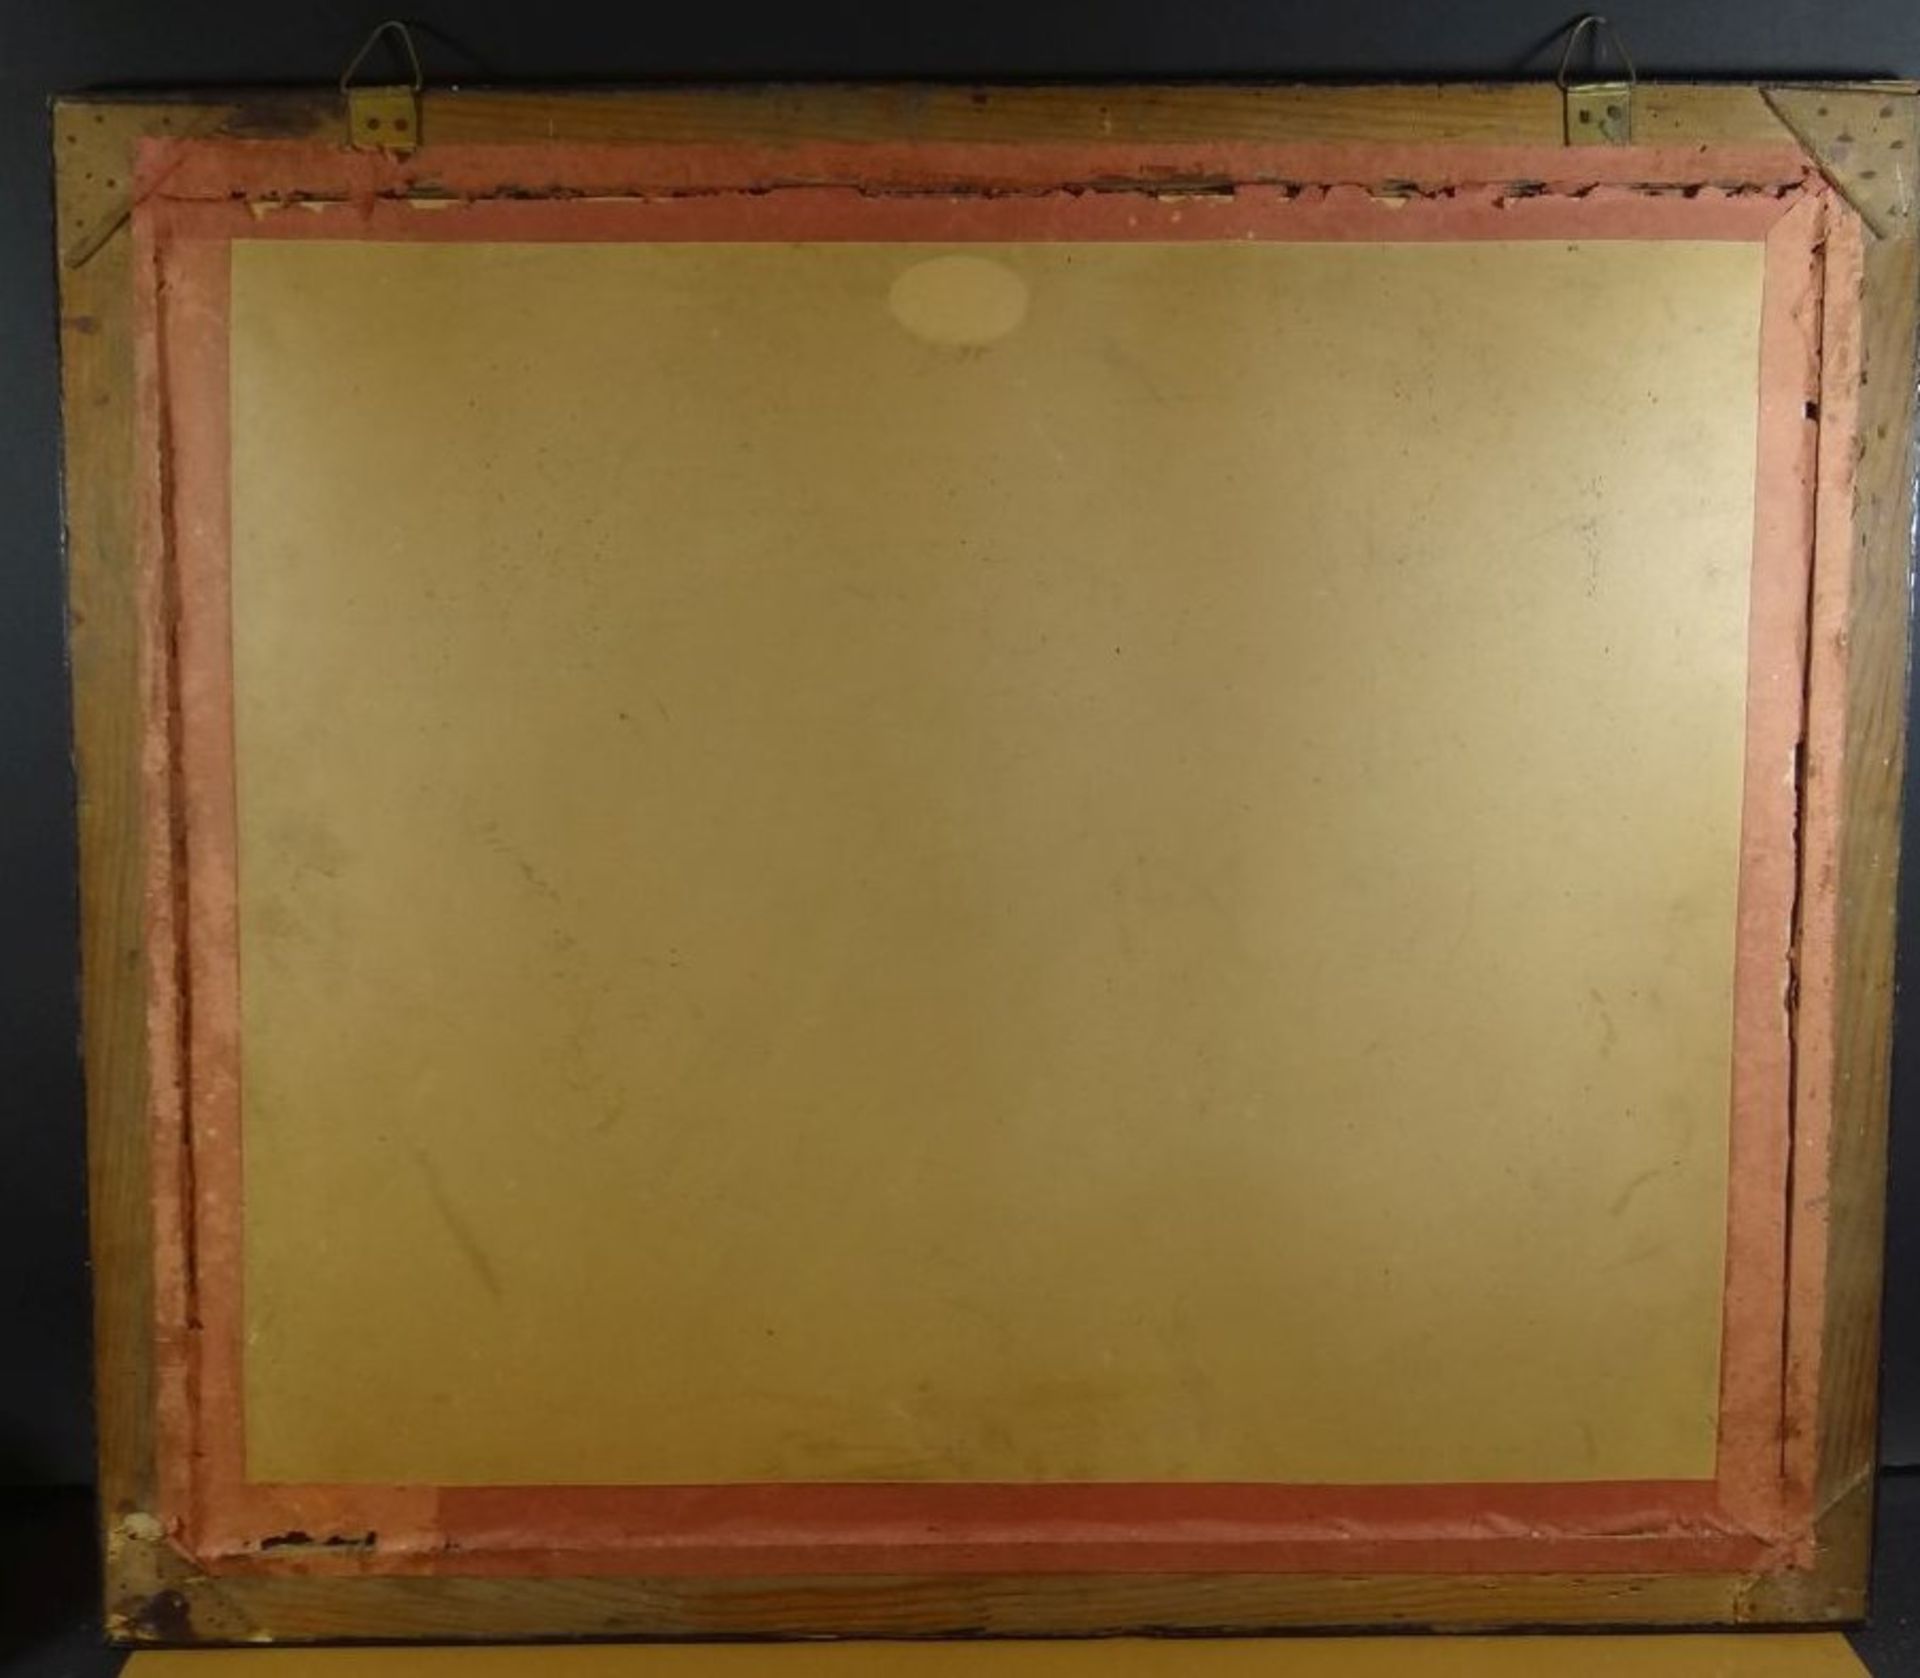 Reservistenbild um 1900, ger/Glas, RG 54x63 cm - Image 16 of 16